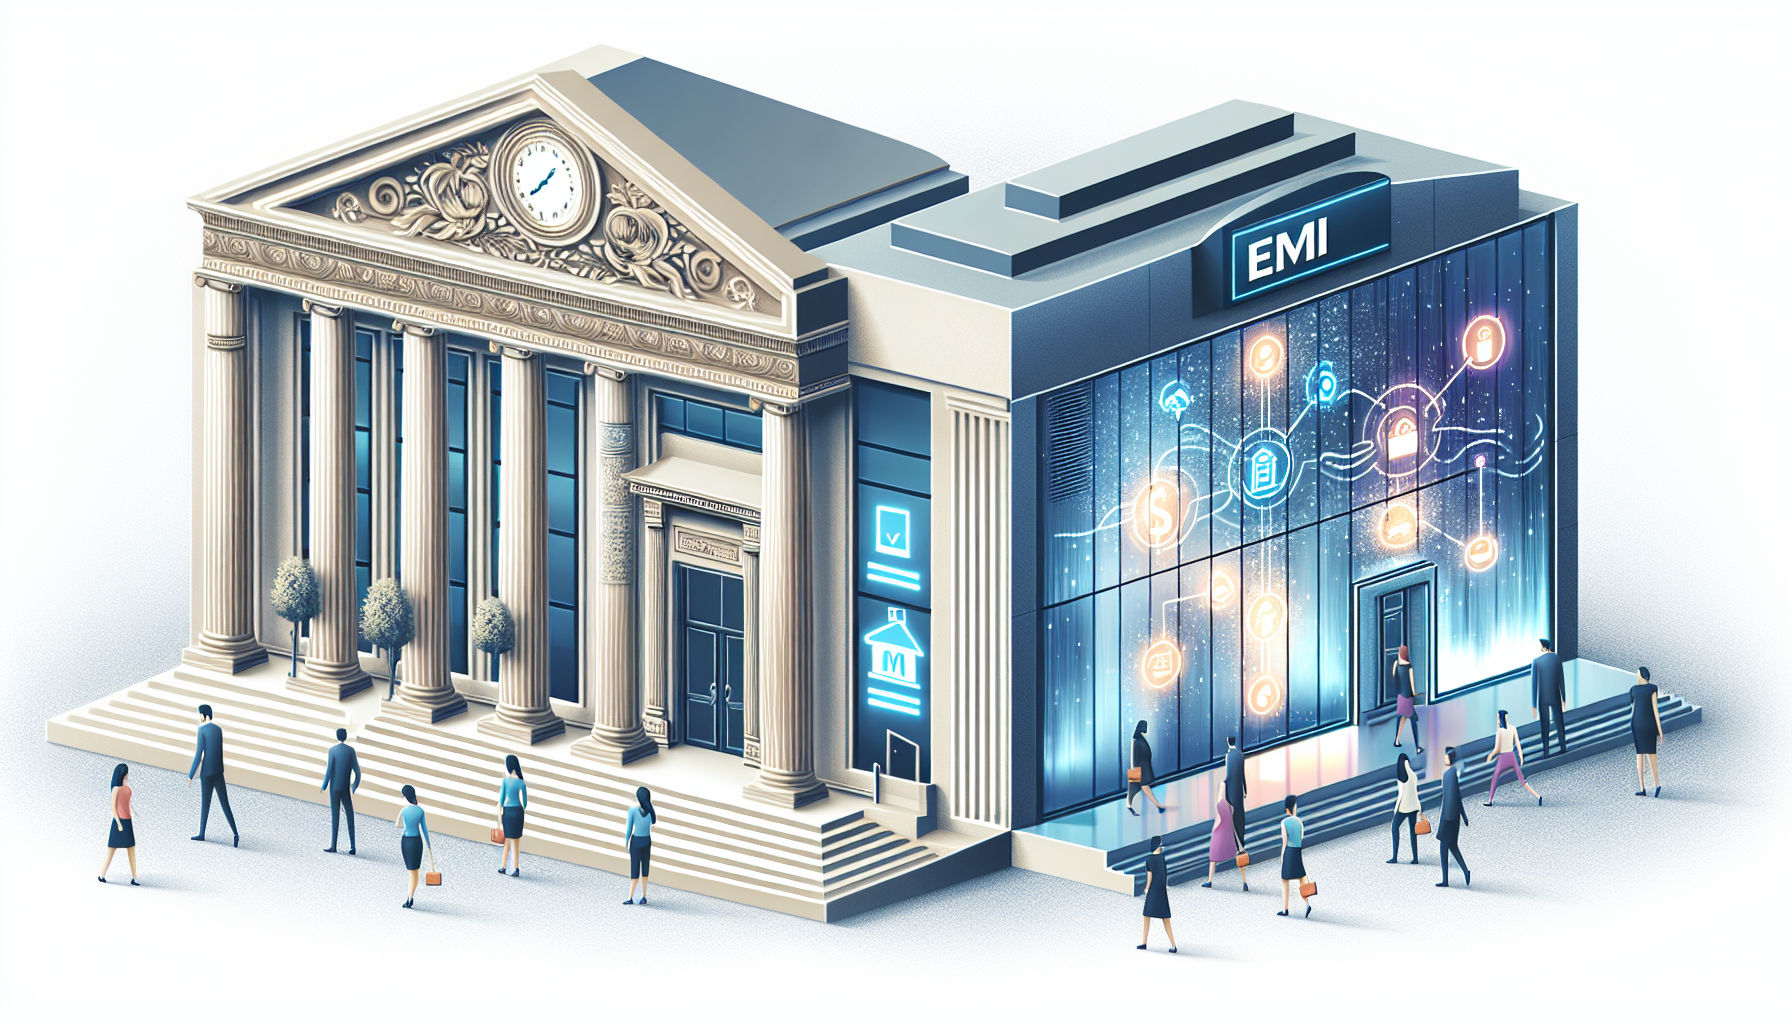 Illustration comparant les IME et les banques traditionnelles